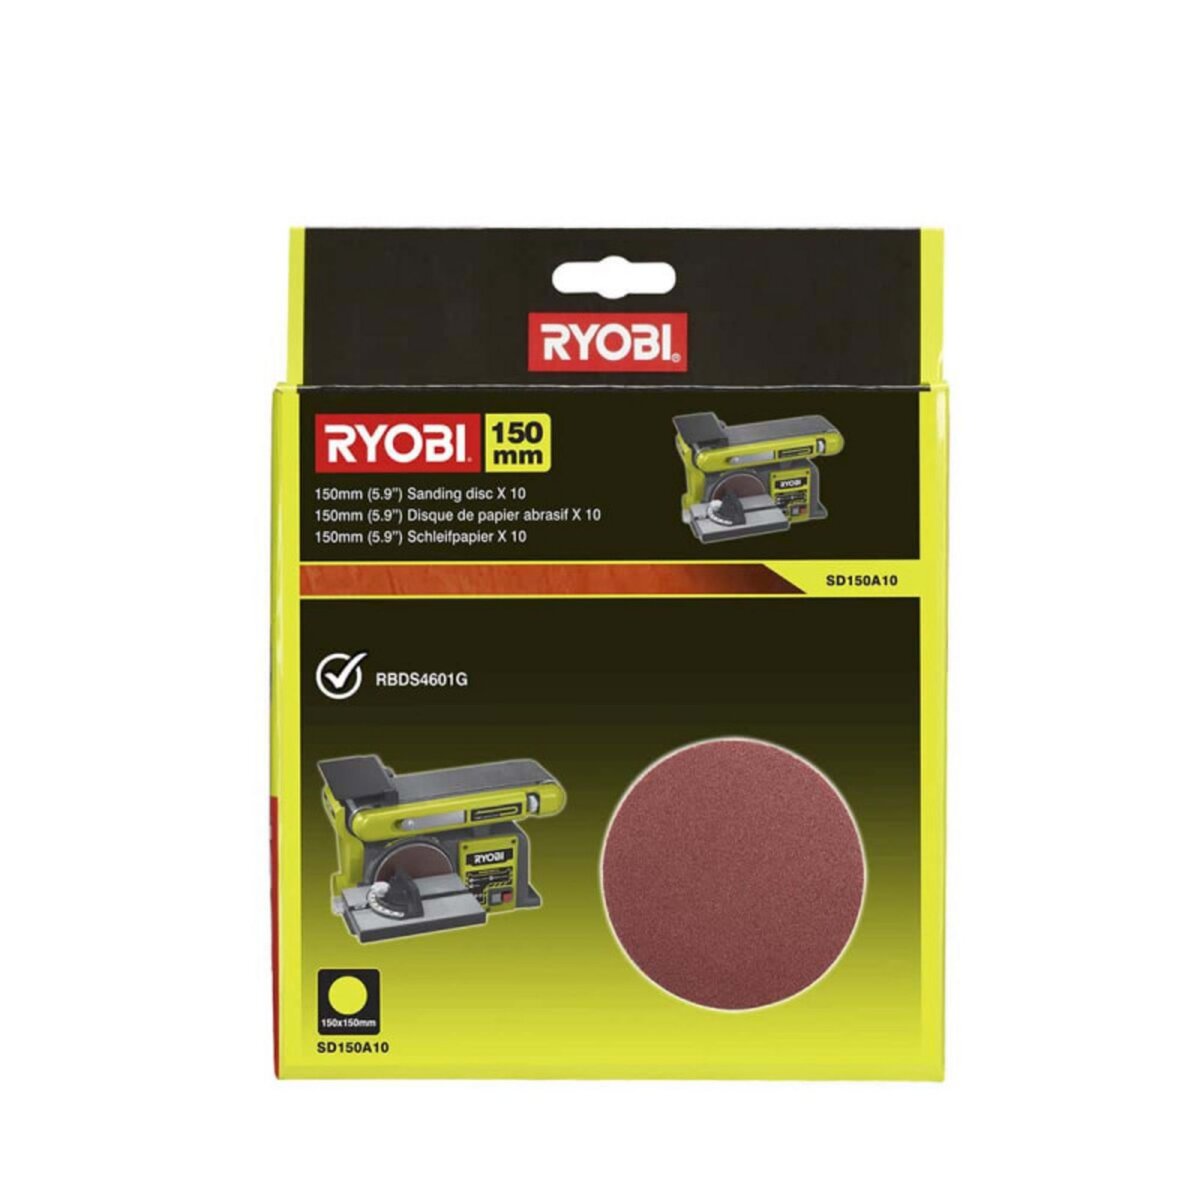 Ryobi 10 disques diamant RYOBI auto agrippants 150 mm - grain 80 SD150A10